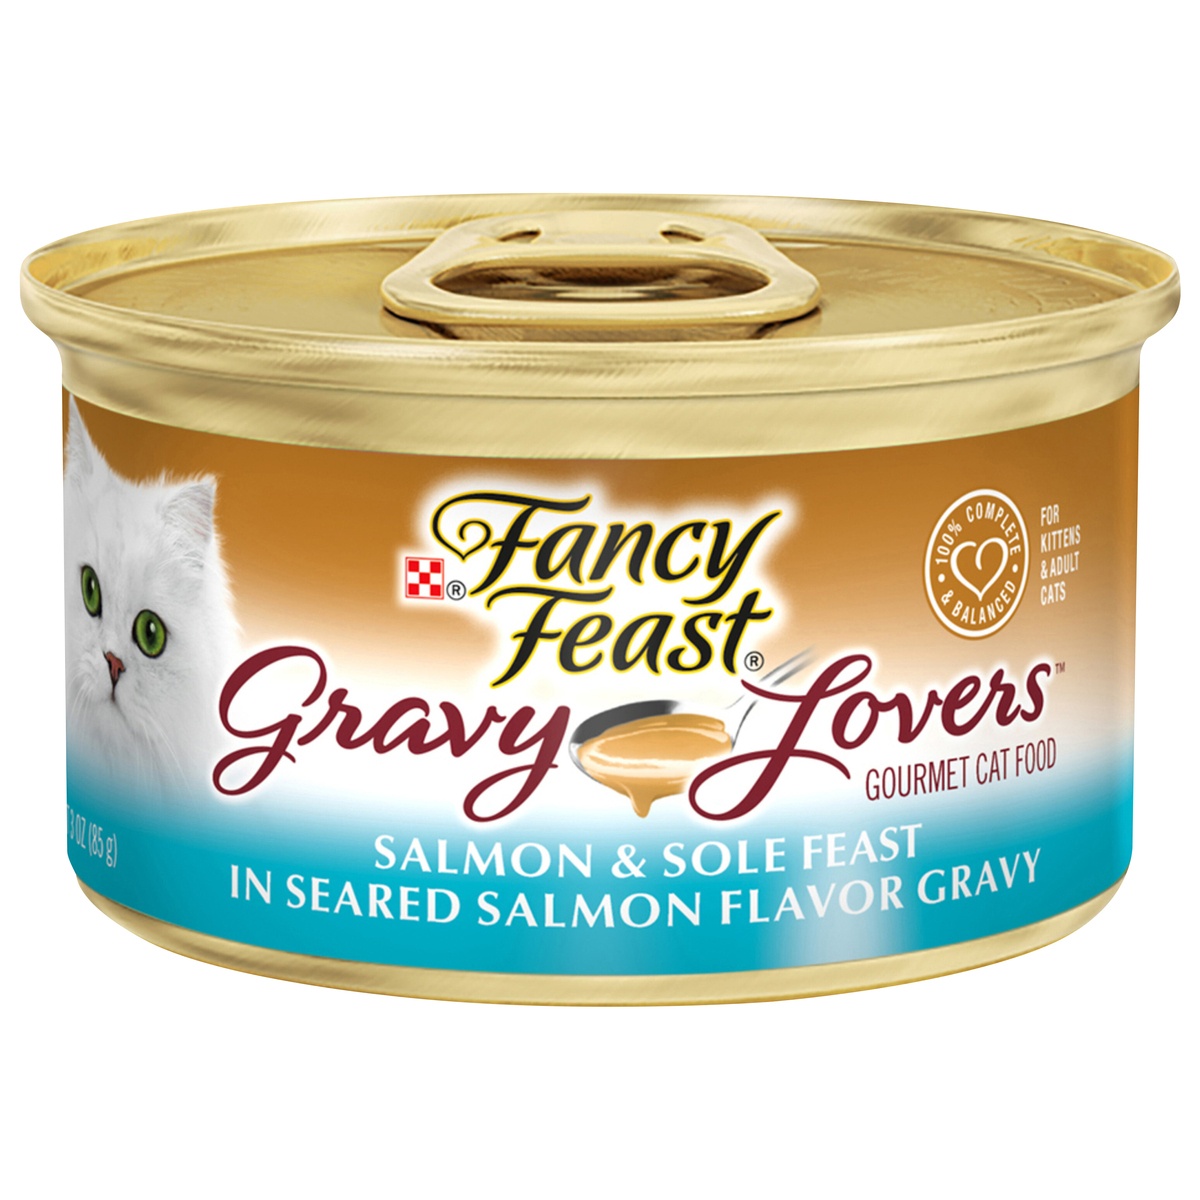 slide 8 of 8, Purina Fancy Feast Gravy Lovers Cat Food, Salmon & Sole in Gravy, 3 oz